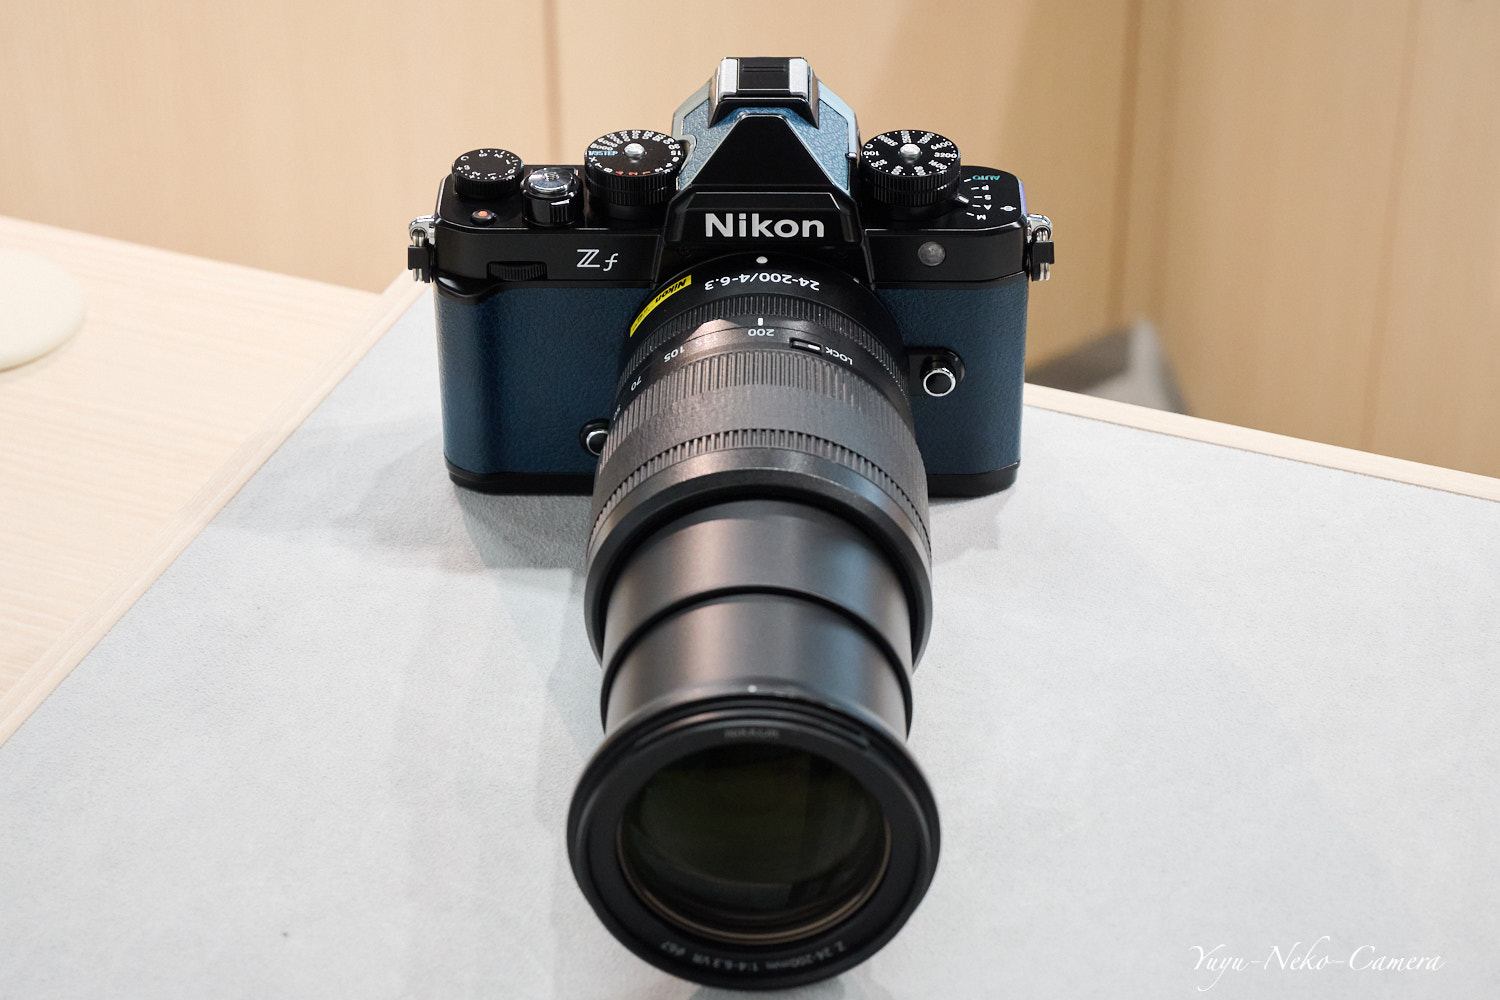 Nikon Zf + NIKKOR Z 24-200mm f/4-6.3 VR